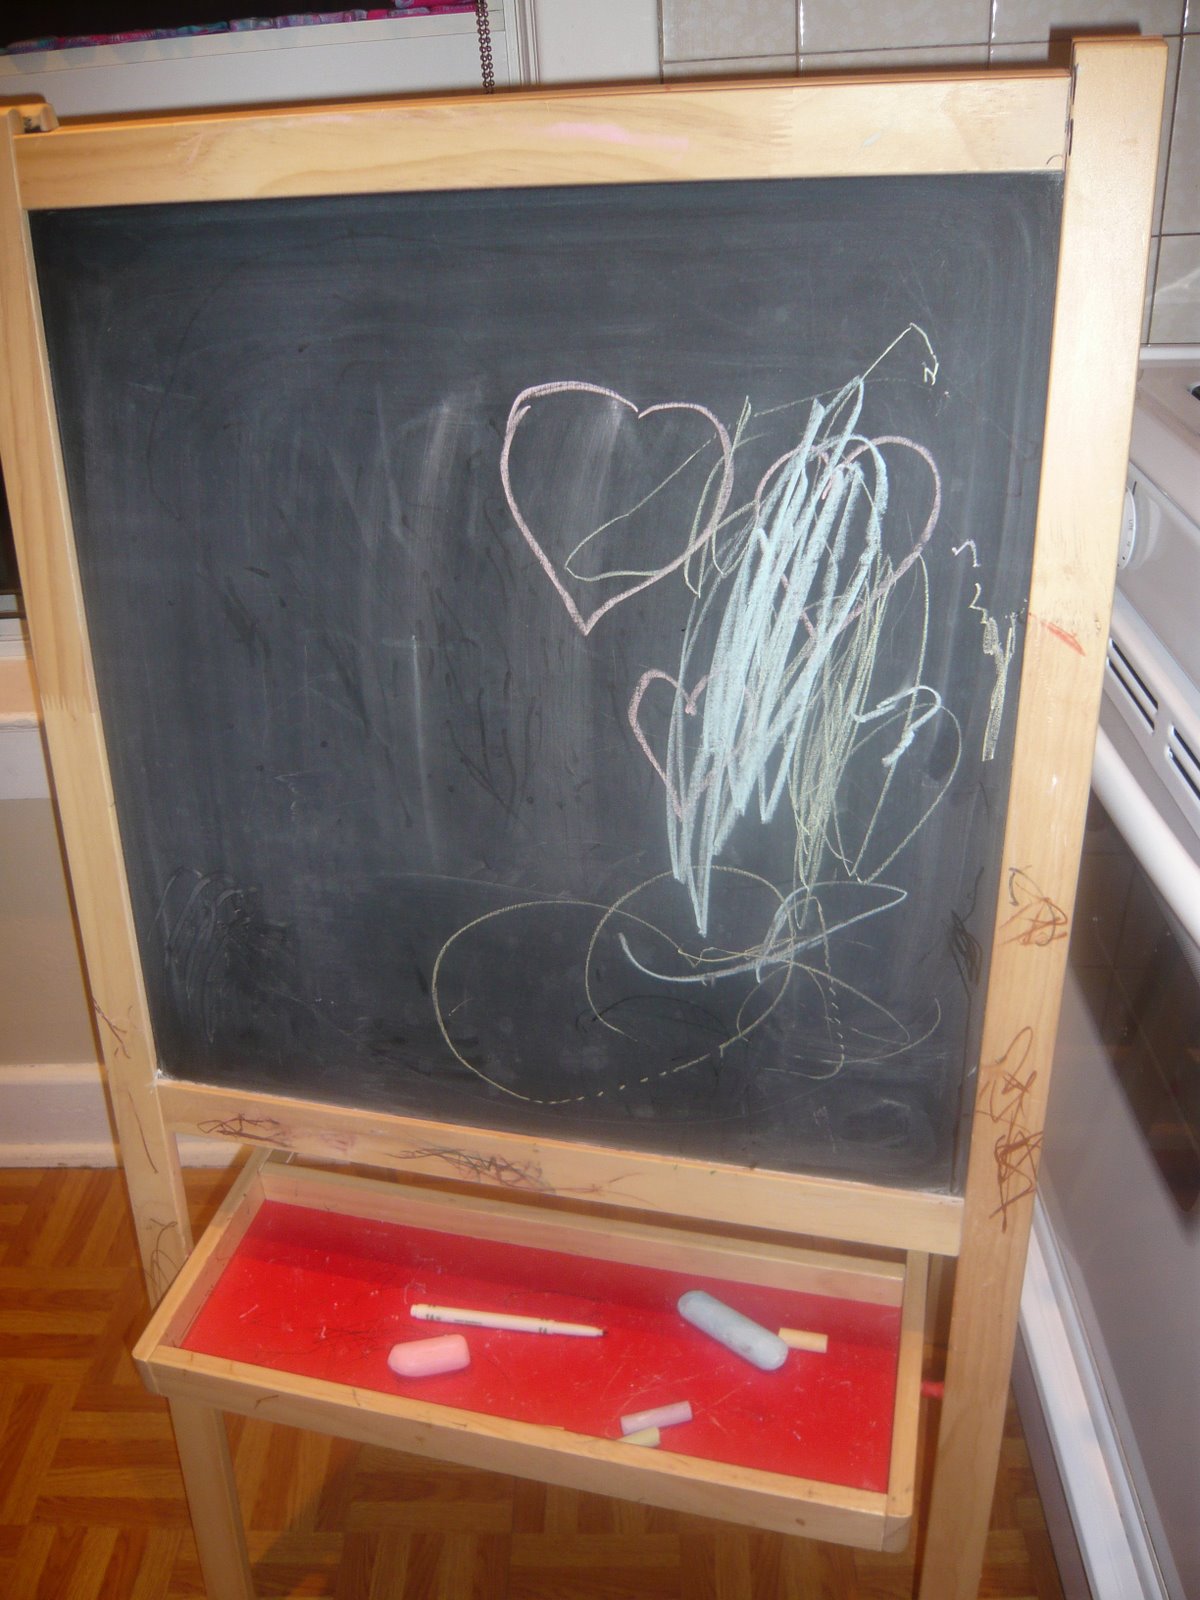 [chalkboard.jpg]